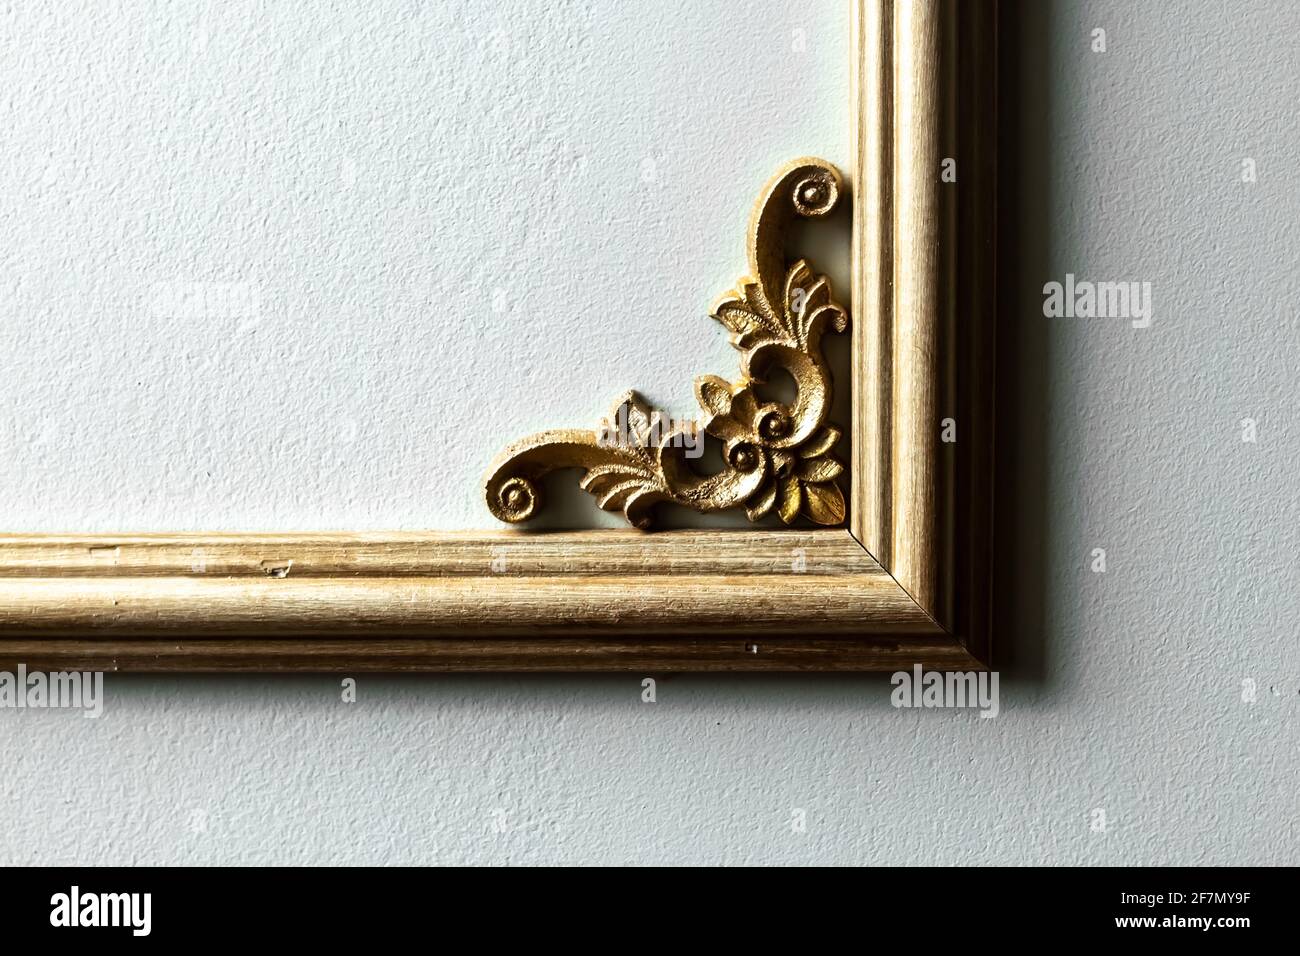 Closeup di una cornice in legno dipinto d'oro con un motivo floreale nell'angolo contro una parete verde pallido. Design ispirato alla classica francese romantica. Foto Stock